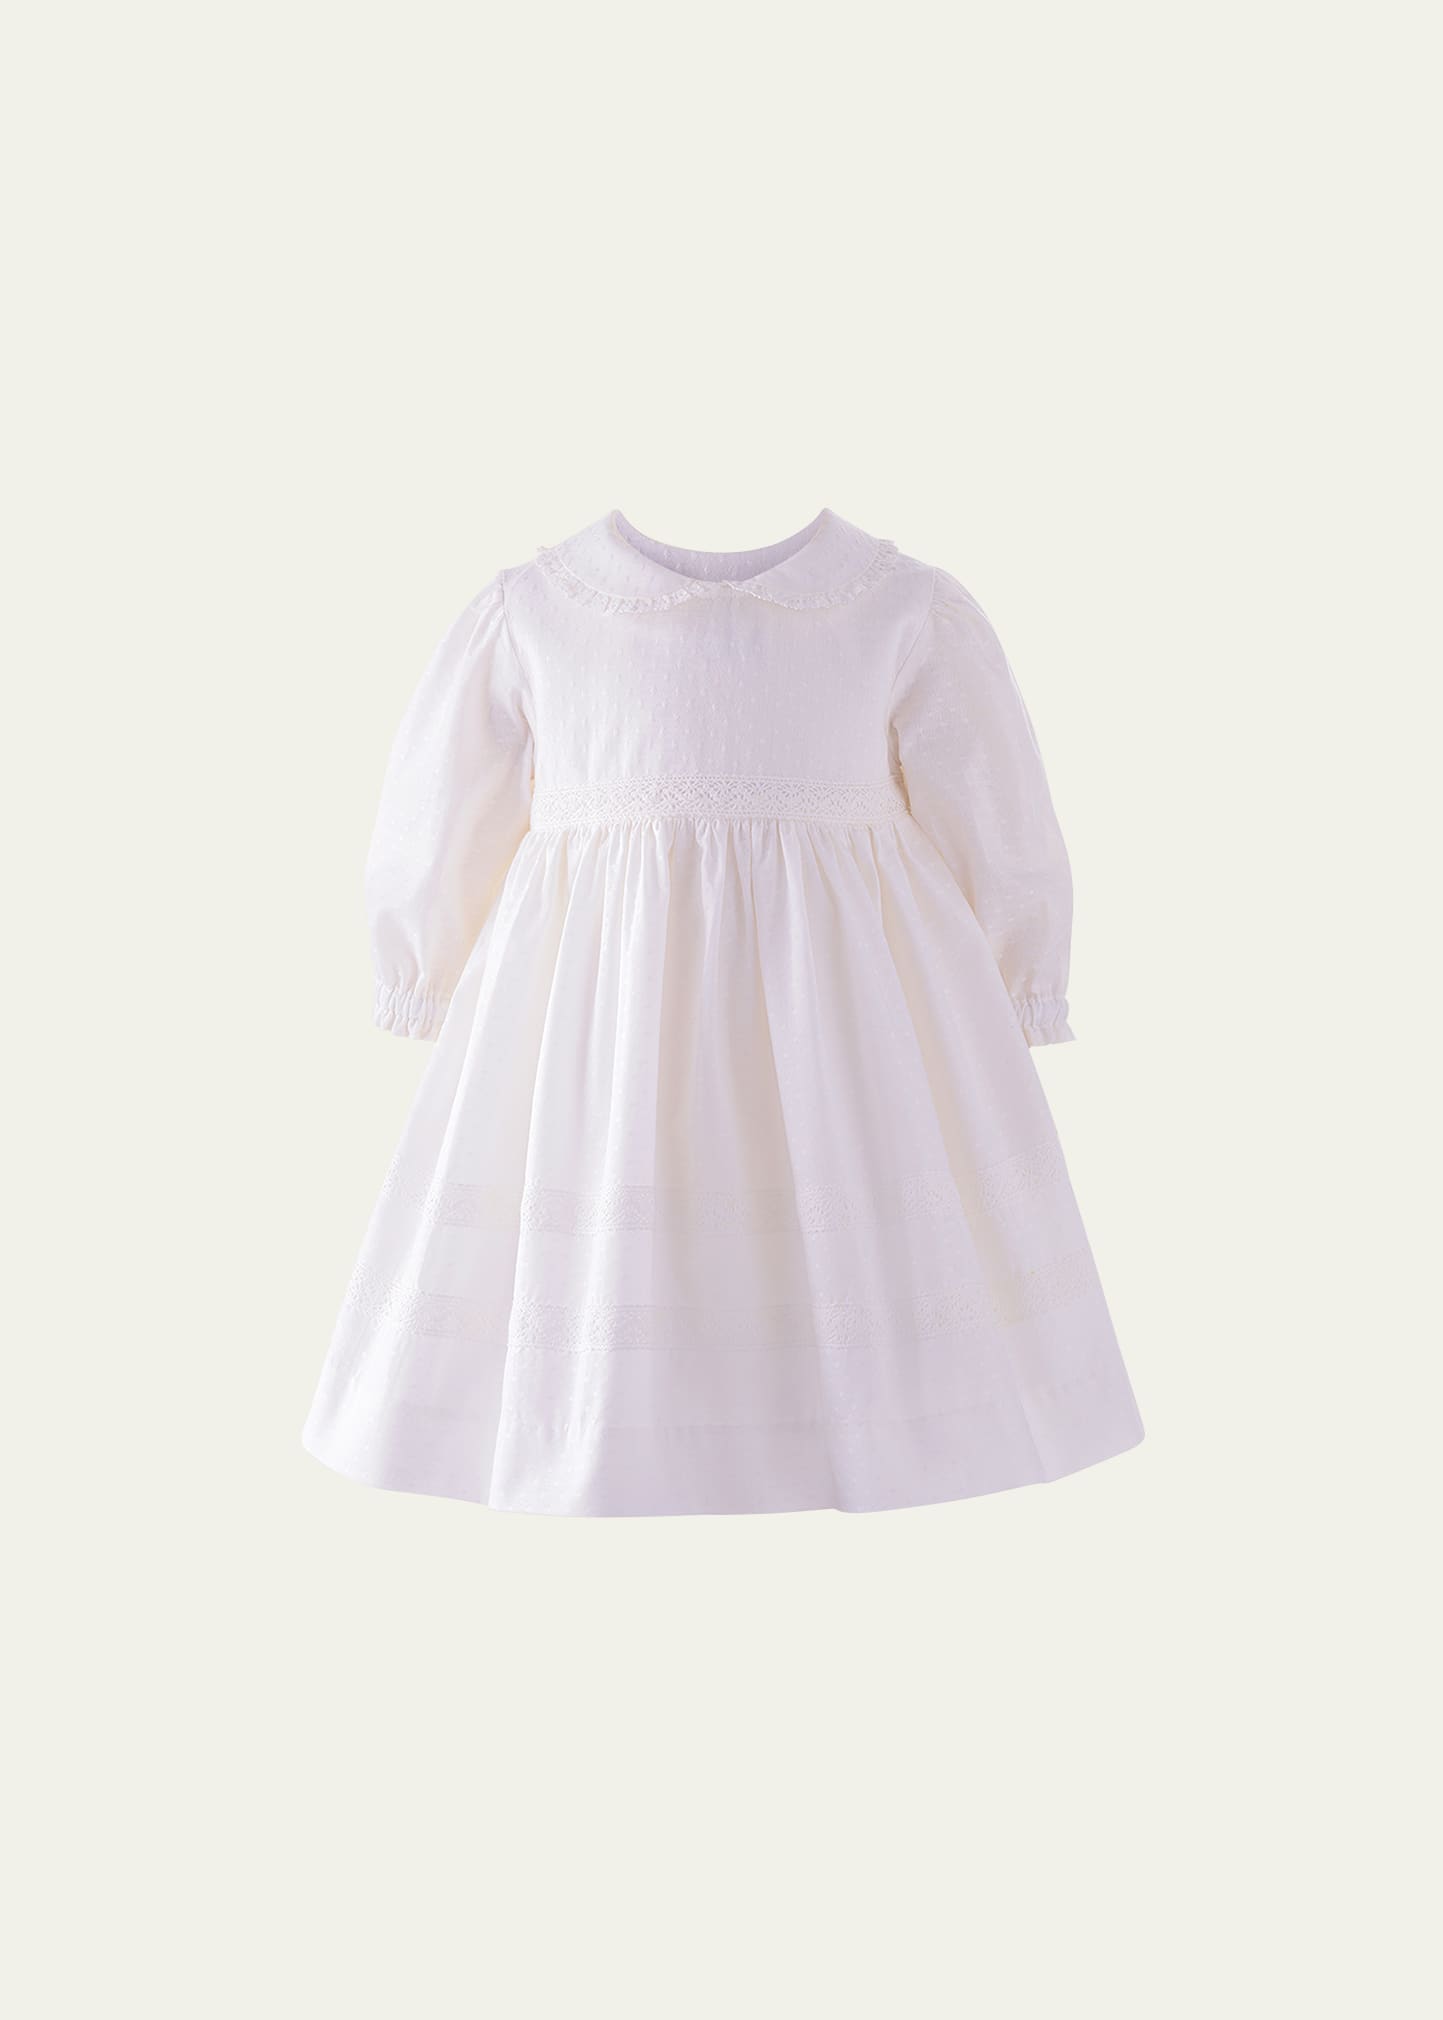 Rachel Riley Kids' Girl's Lace Trim Dress W/ Bloomers In Ivory